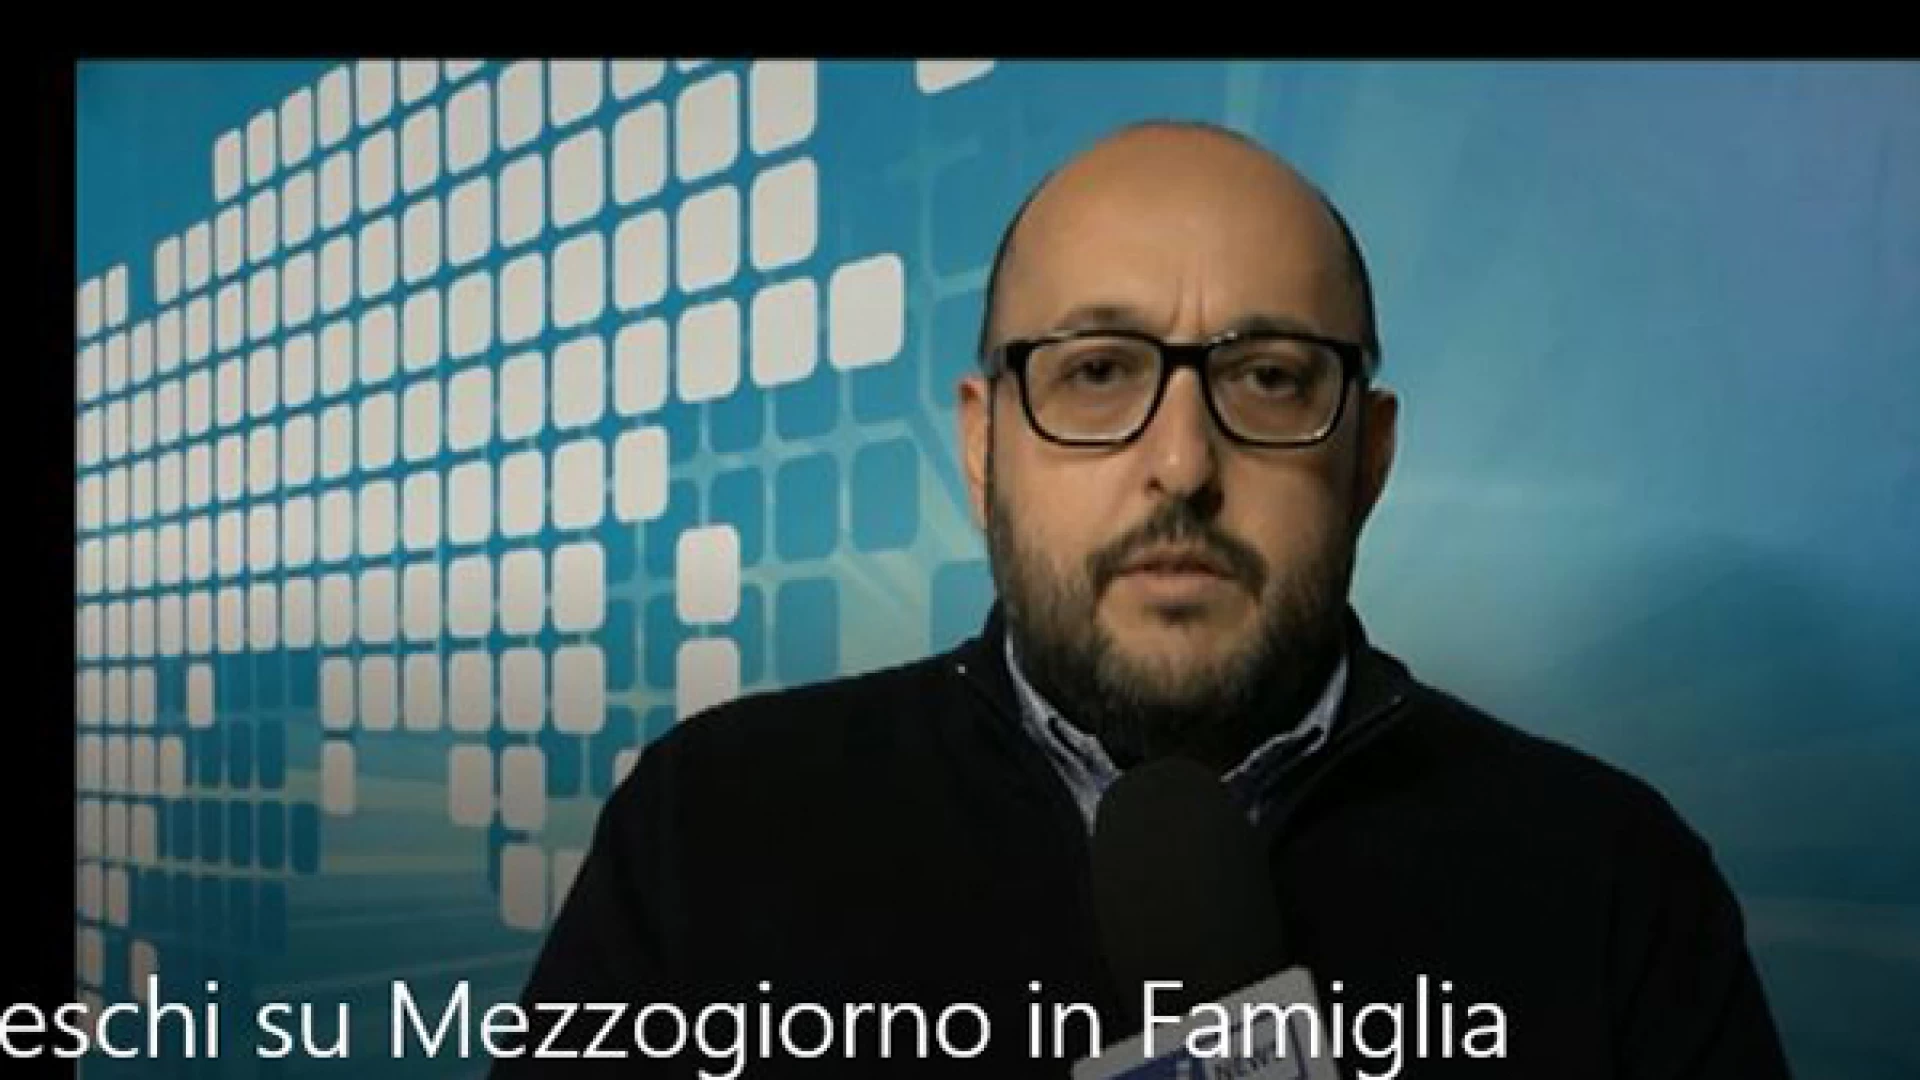 Fornelli: "Il successo a Mezzogiorno in Famiglia è merito di tutti". La nostra video-intervista al sindaco Giovanni Tedeschi.